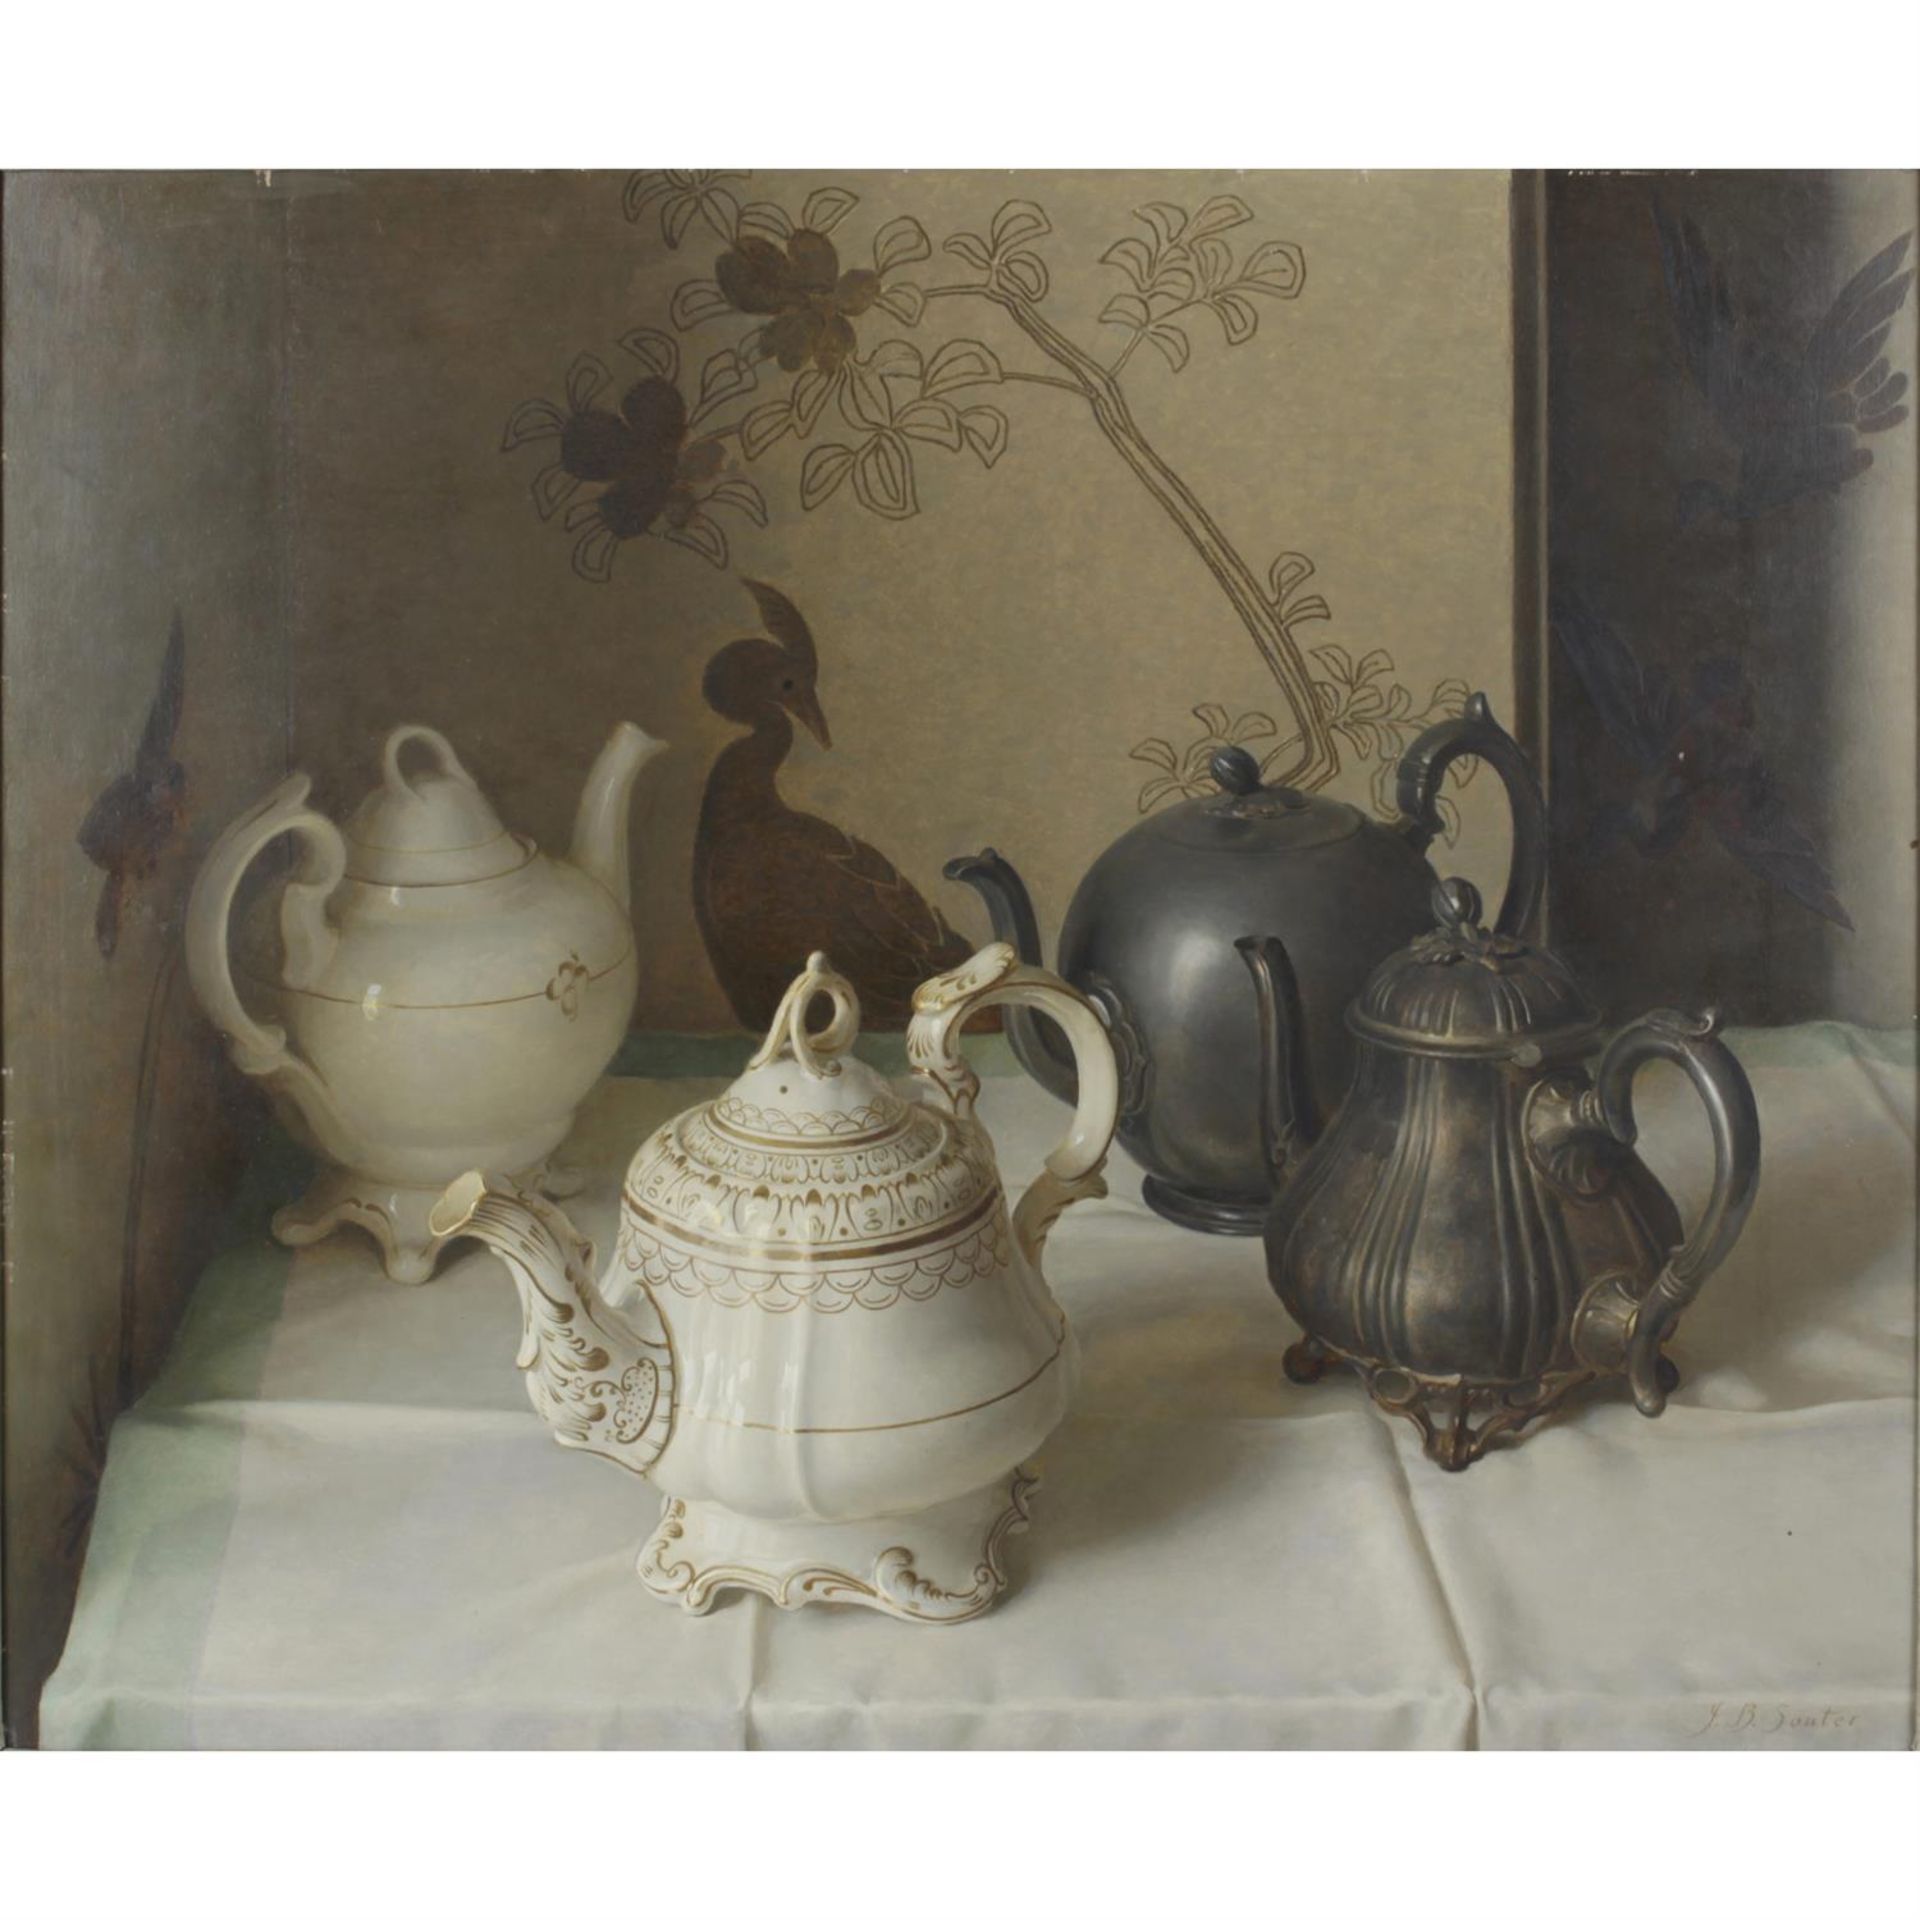 J.B.Souter, "A Tattle of Teapots", oil on board.